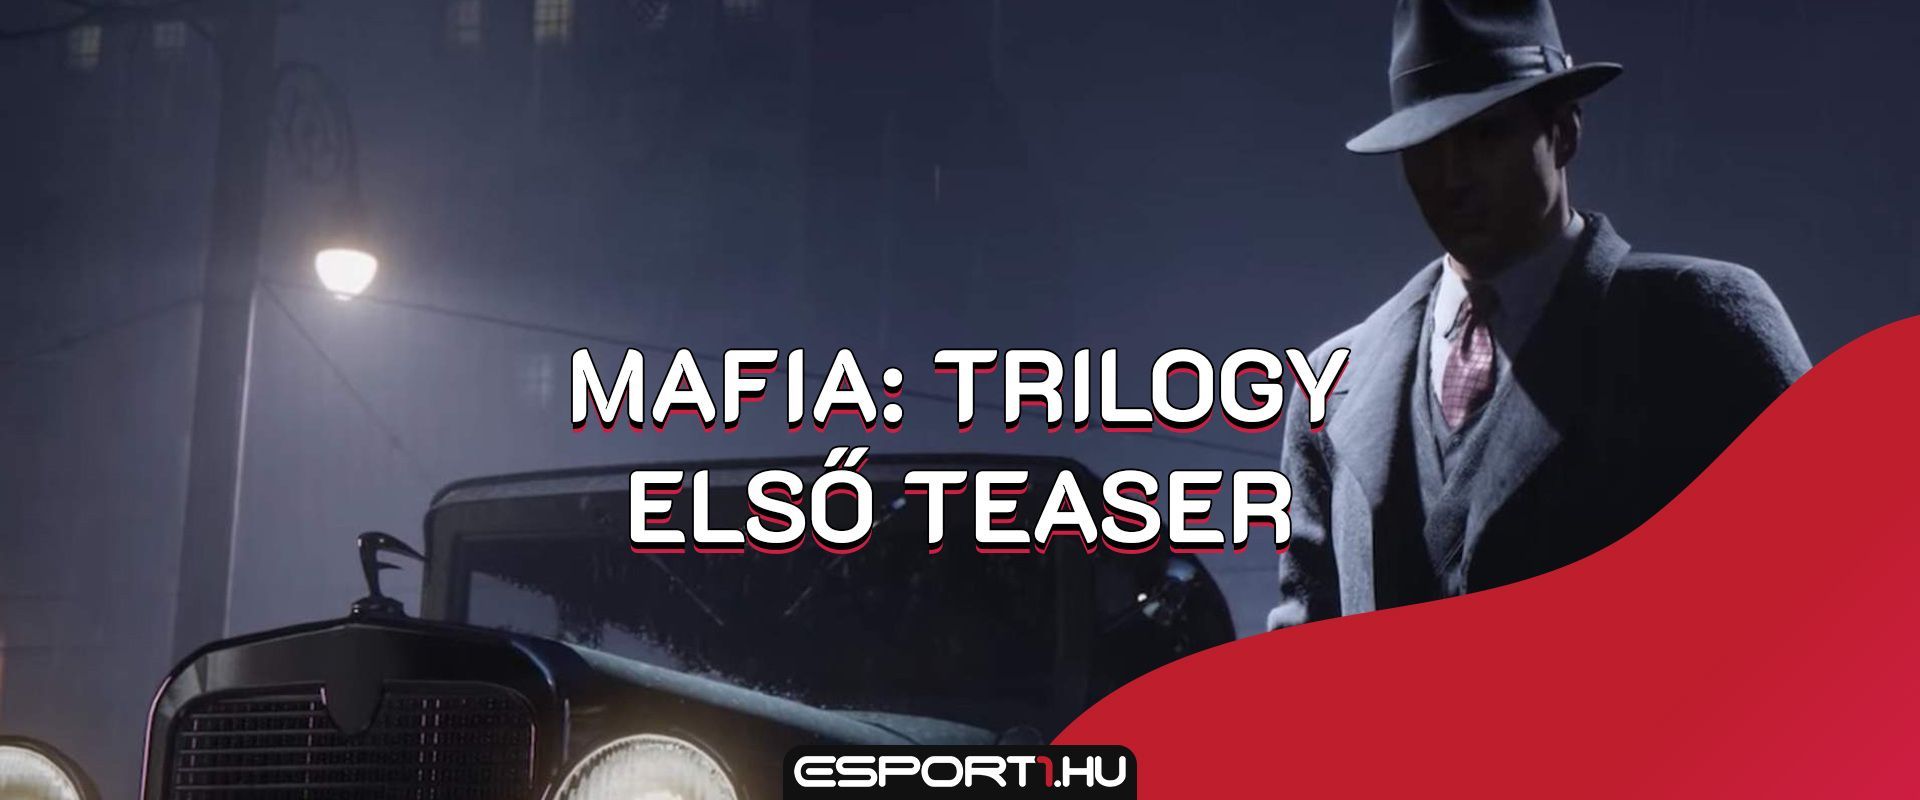 Megérkezett a Mafia: Trilogy hivatalos kedvcsináló videója